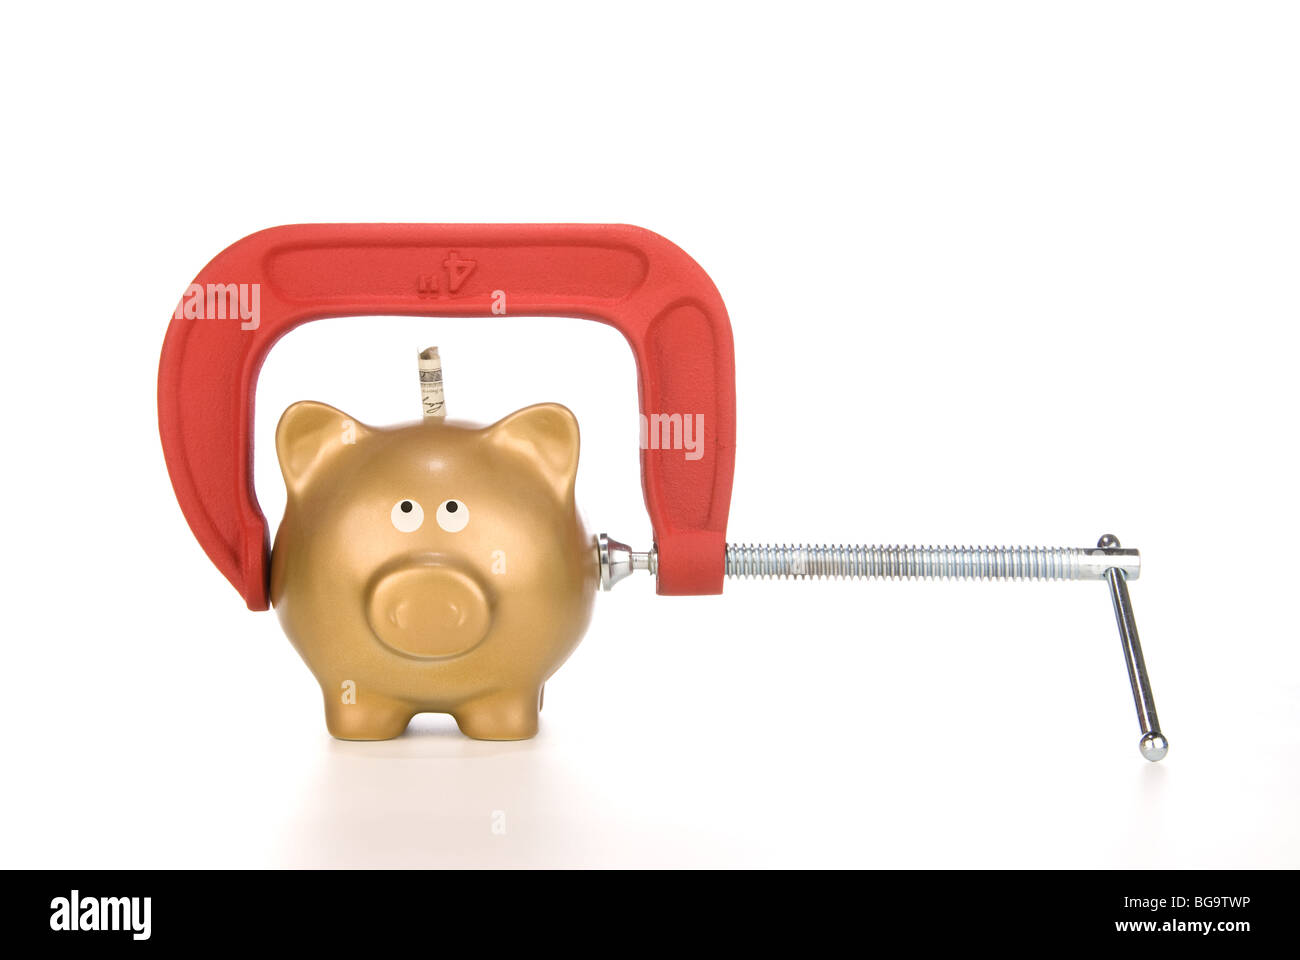 Eine goldene Sparschwein ist für seine letzten Dollar gekürzt. Bild kann für viele finanzielle Ableitungen verwendet werden. Stockfoto